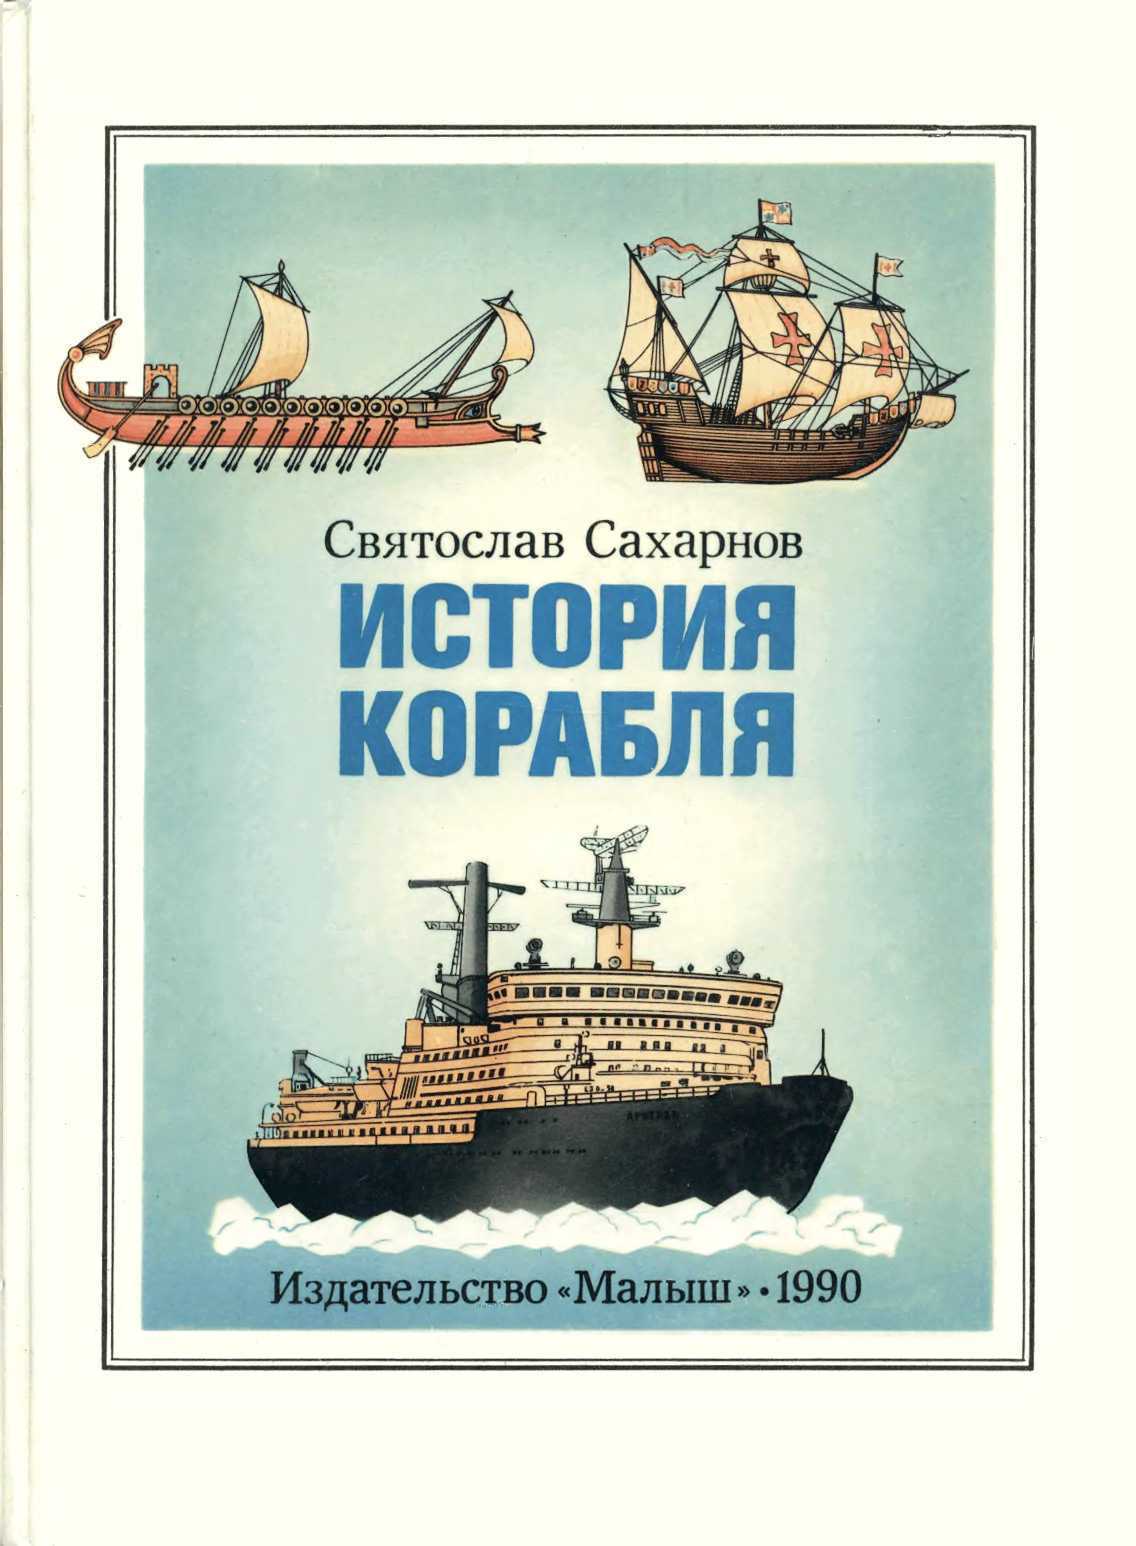 Читать про корабли. Книга история корабля. Книга про корабли.